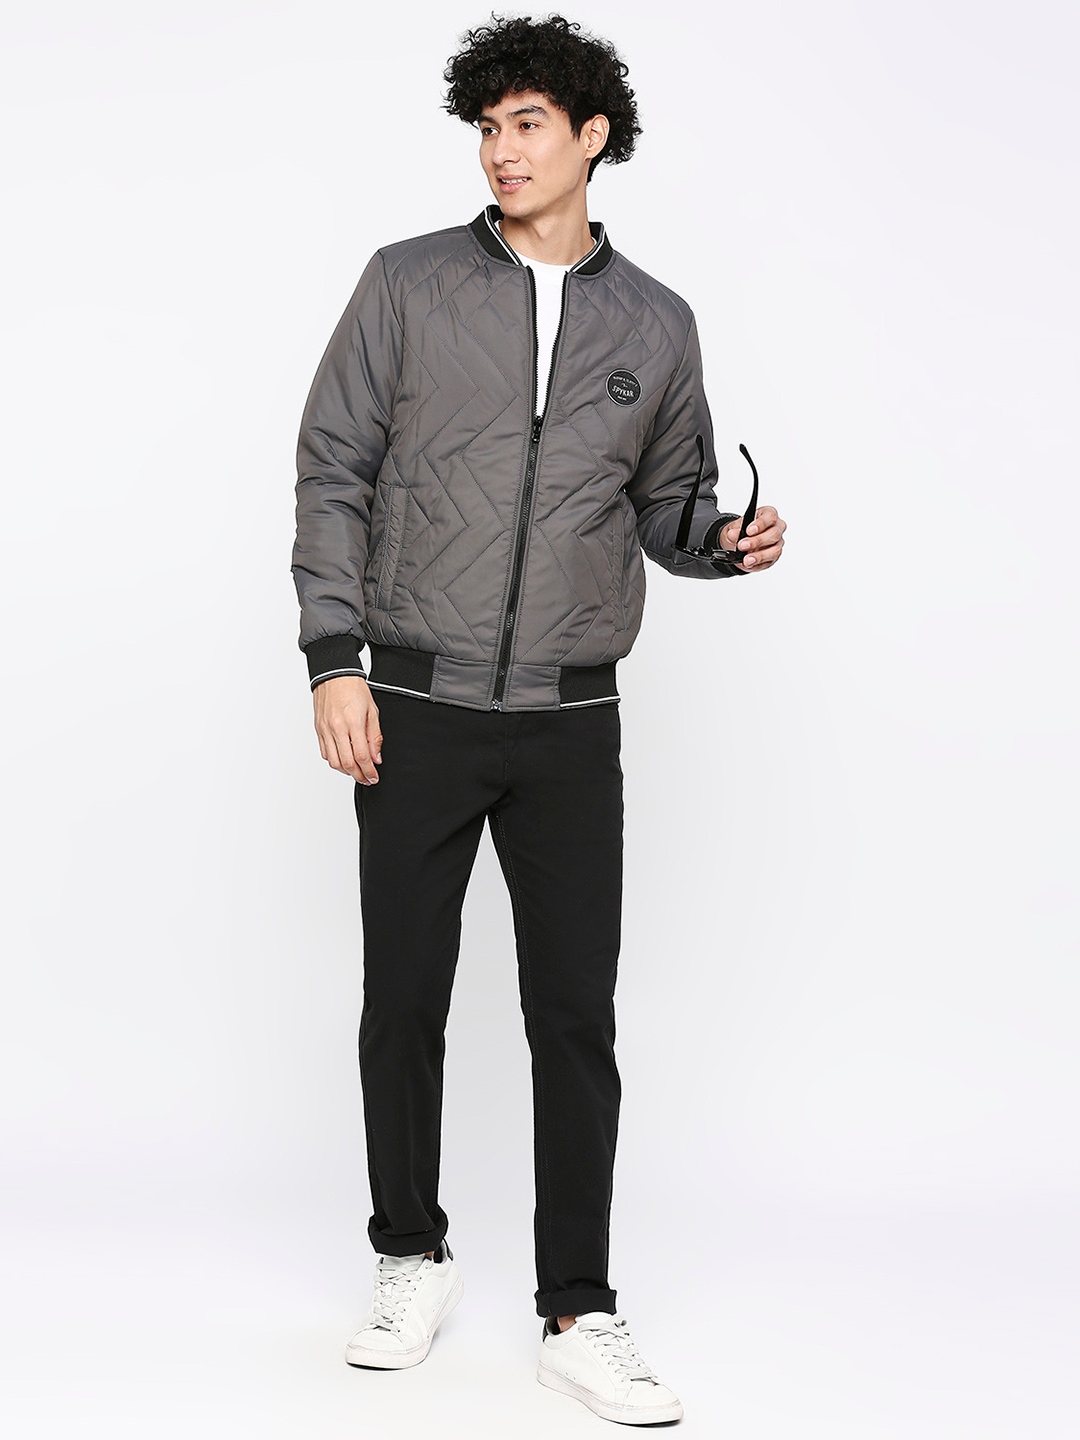 spykar | Spykar Charcoal Grey Desert Polyester Full Sleeve Casual Jacket For Men 5